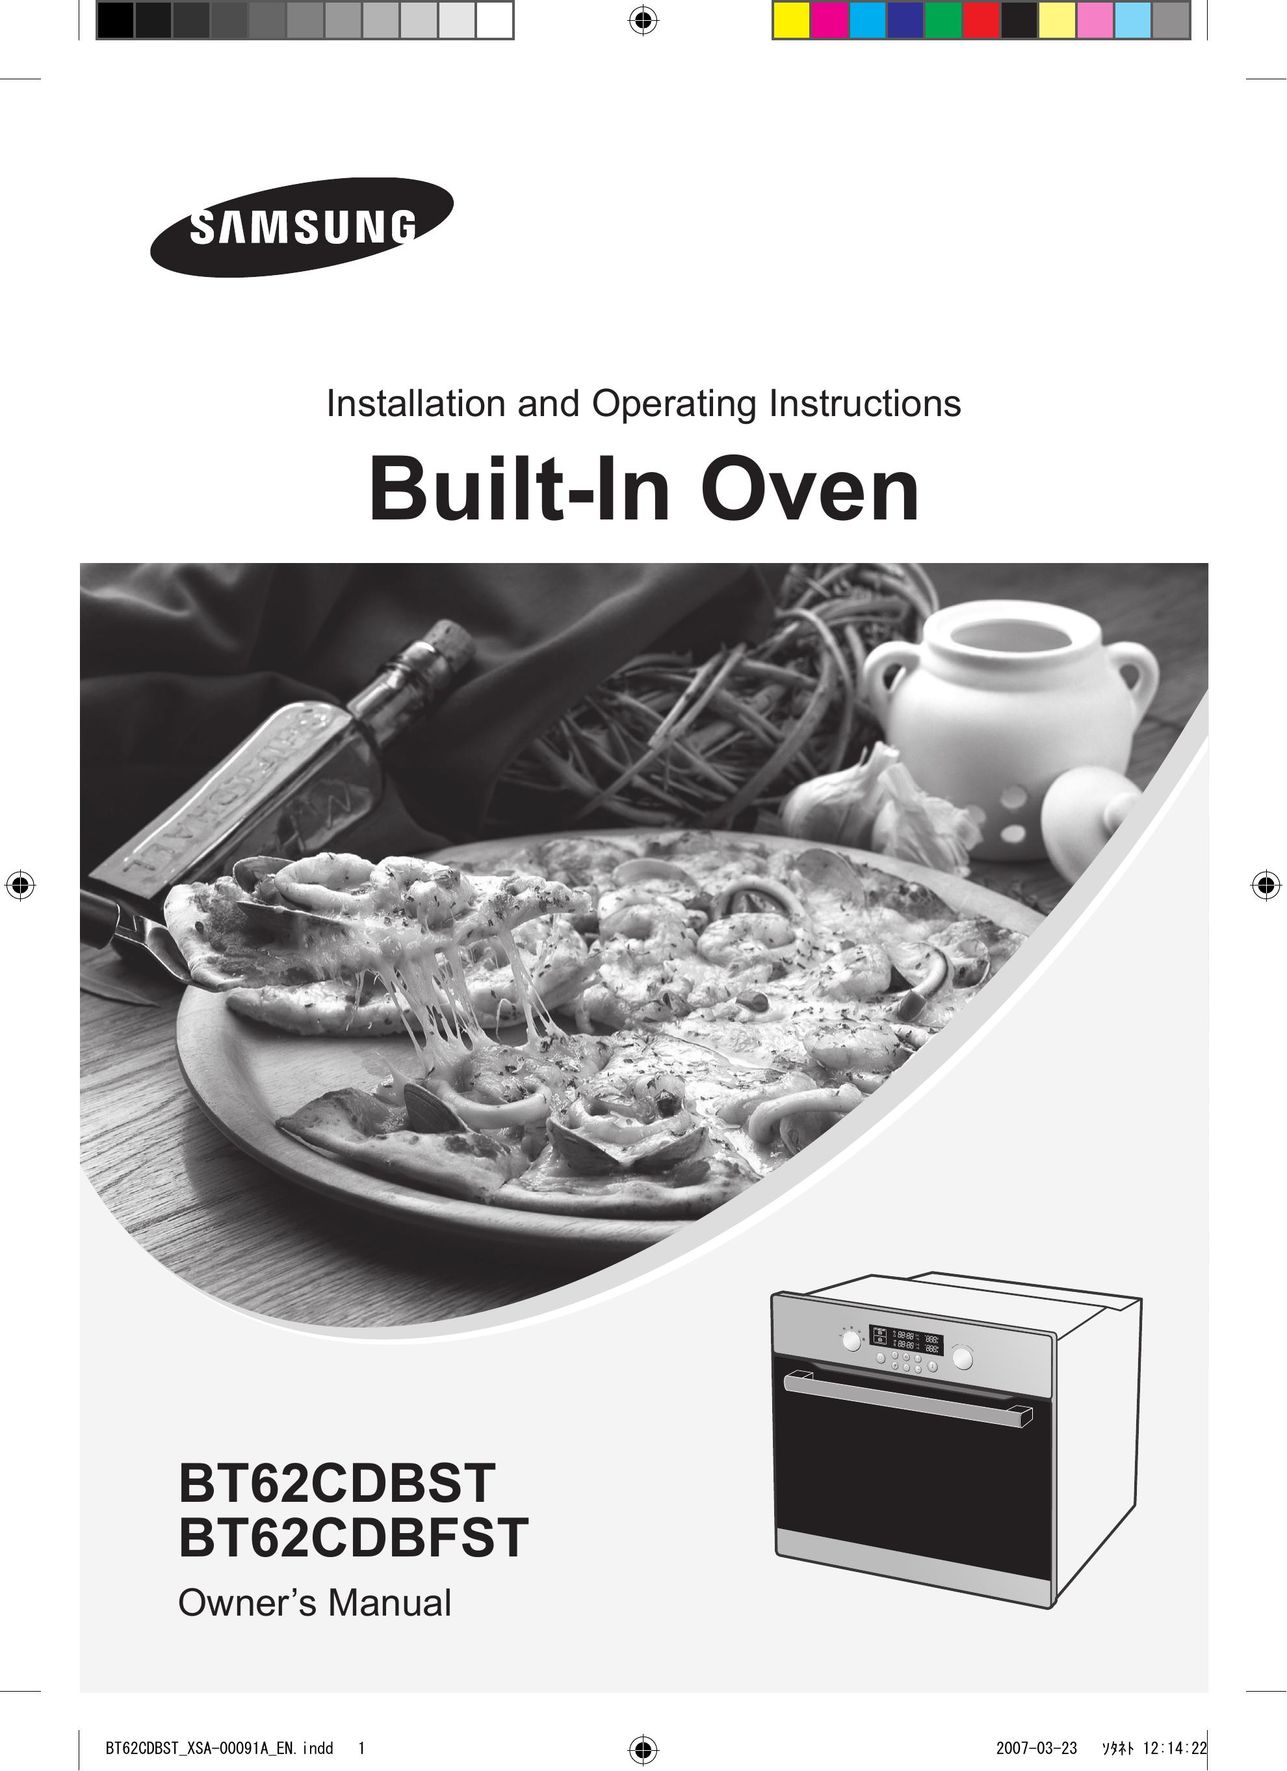 Samsung BT62CDBST Oven User Manual